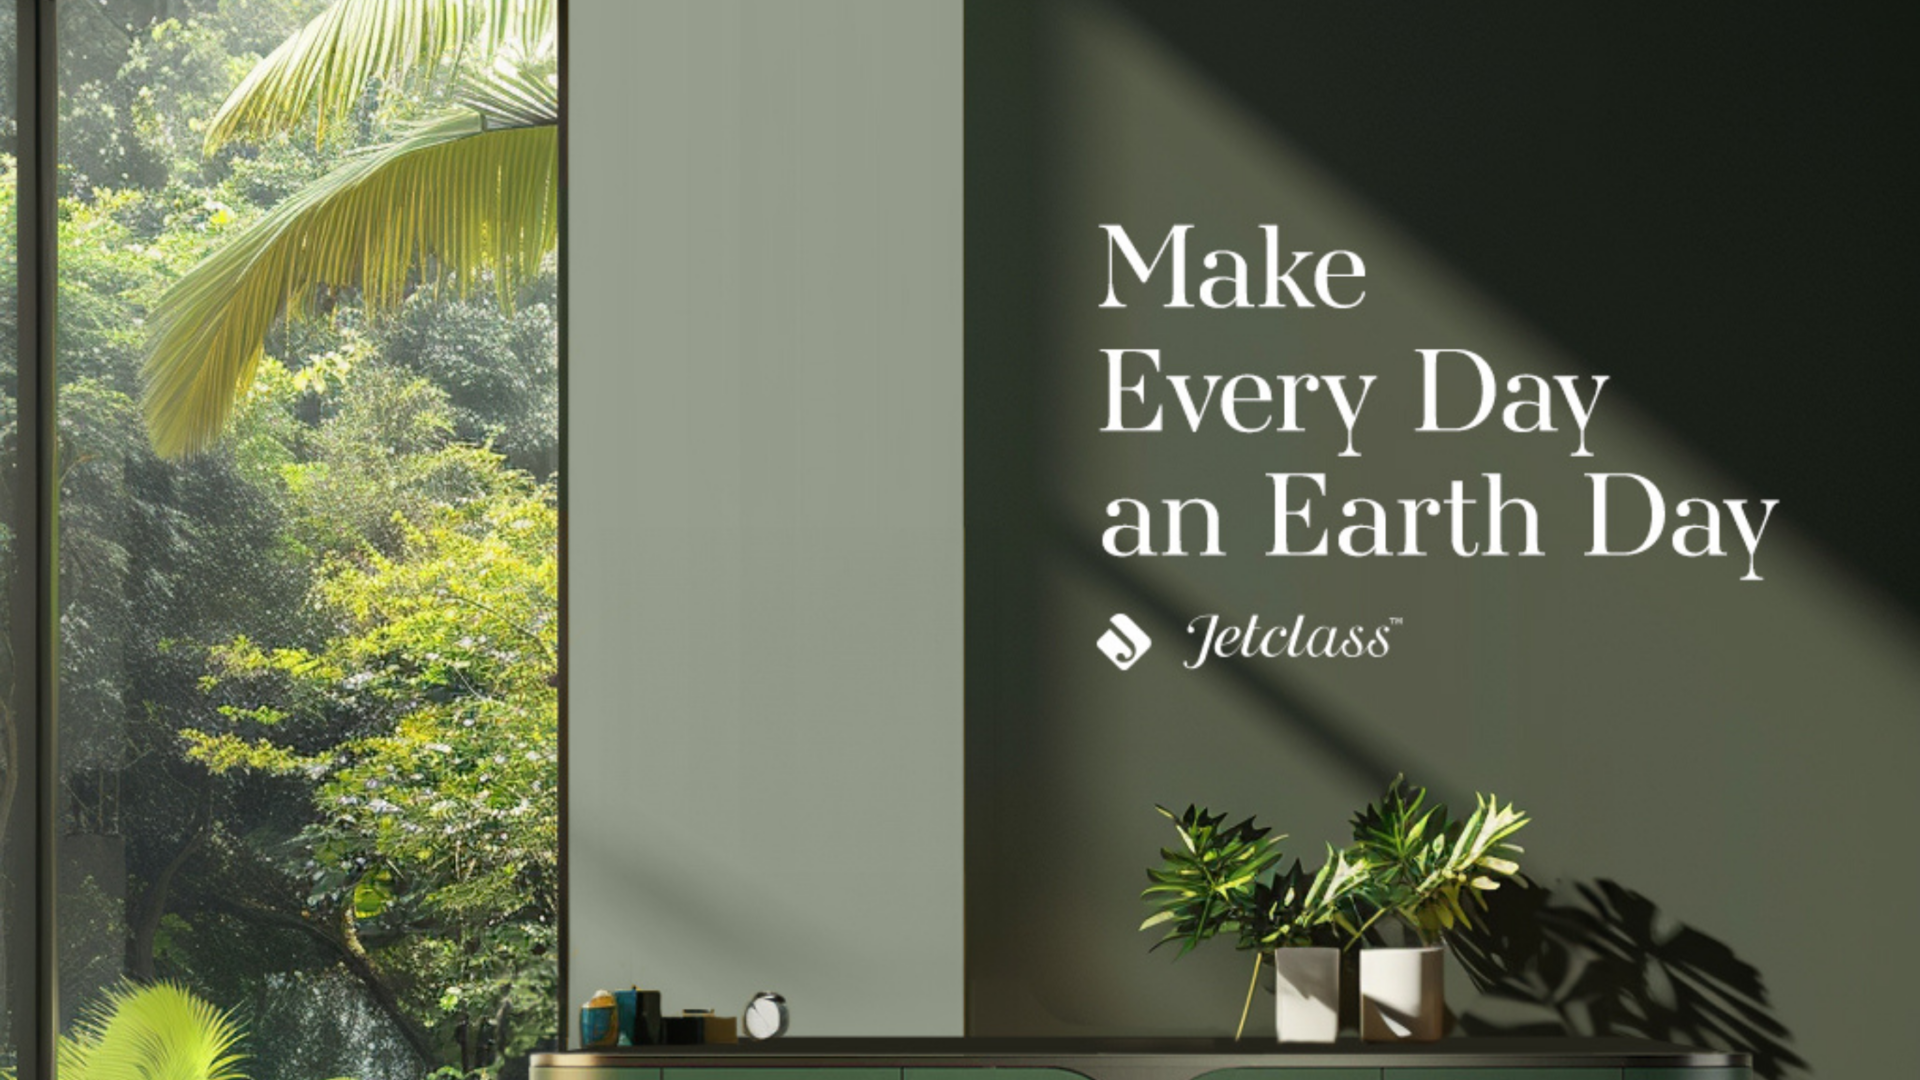 Sustentabilidade Ambiental e Responsabilidade na Jetclass: As Melhores Práticas no Design